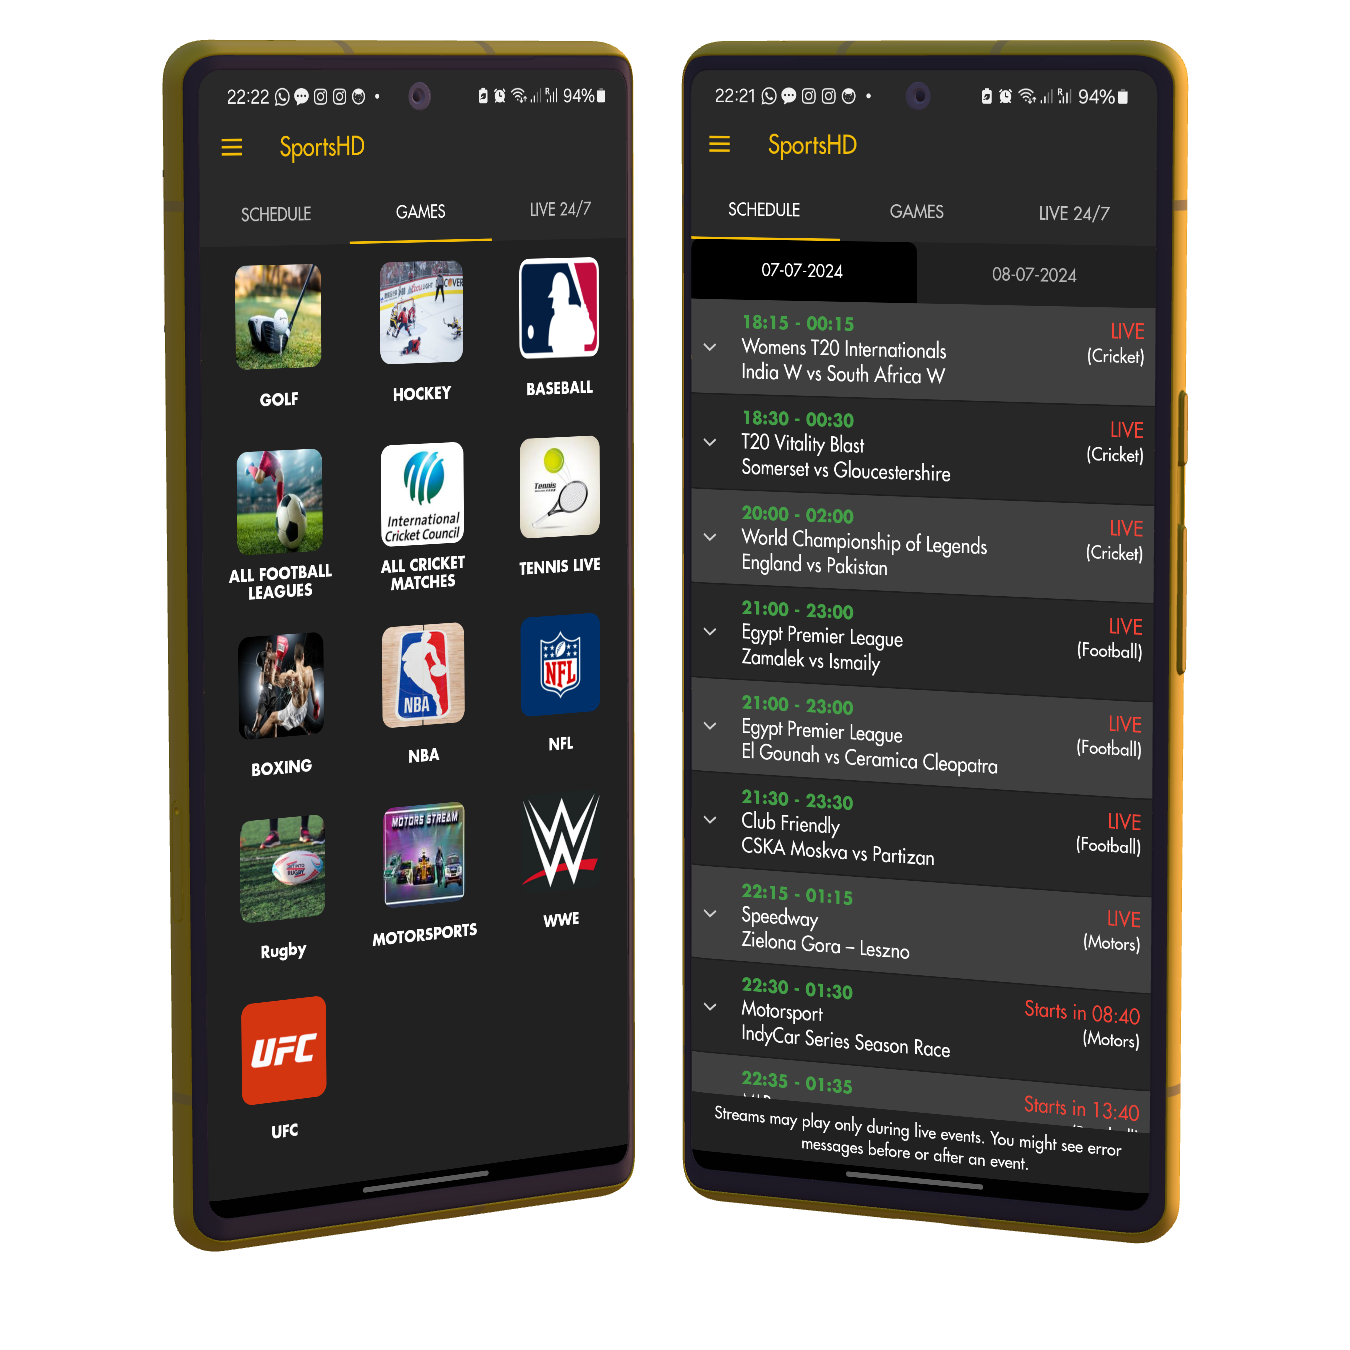 All sports games in SportsHD App